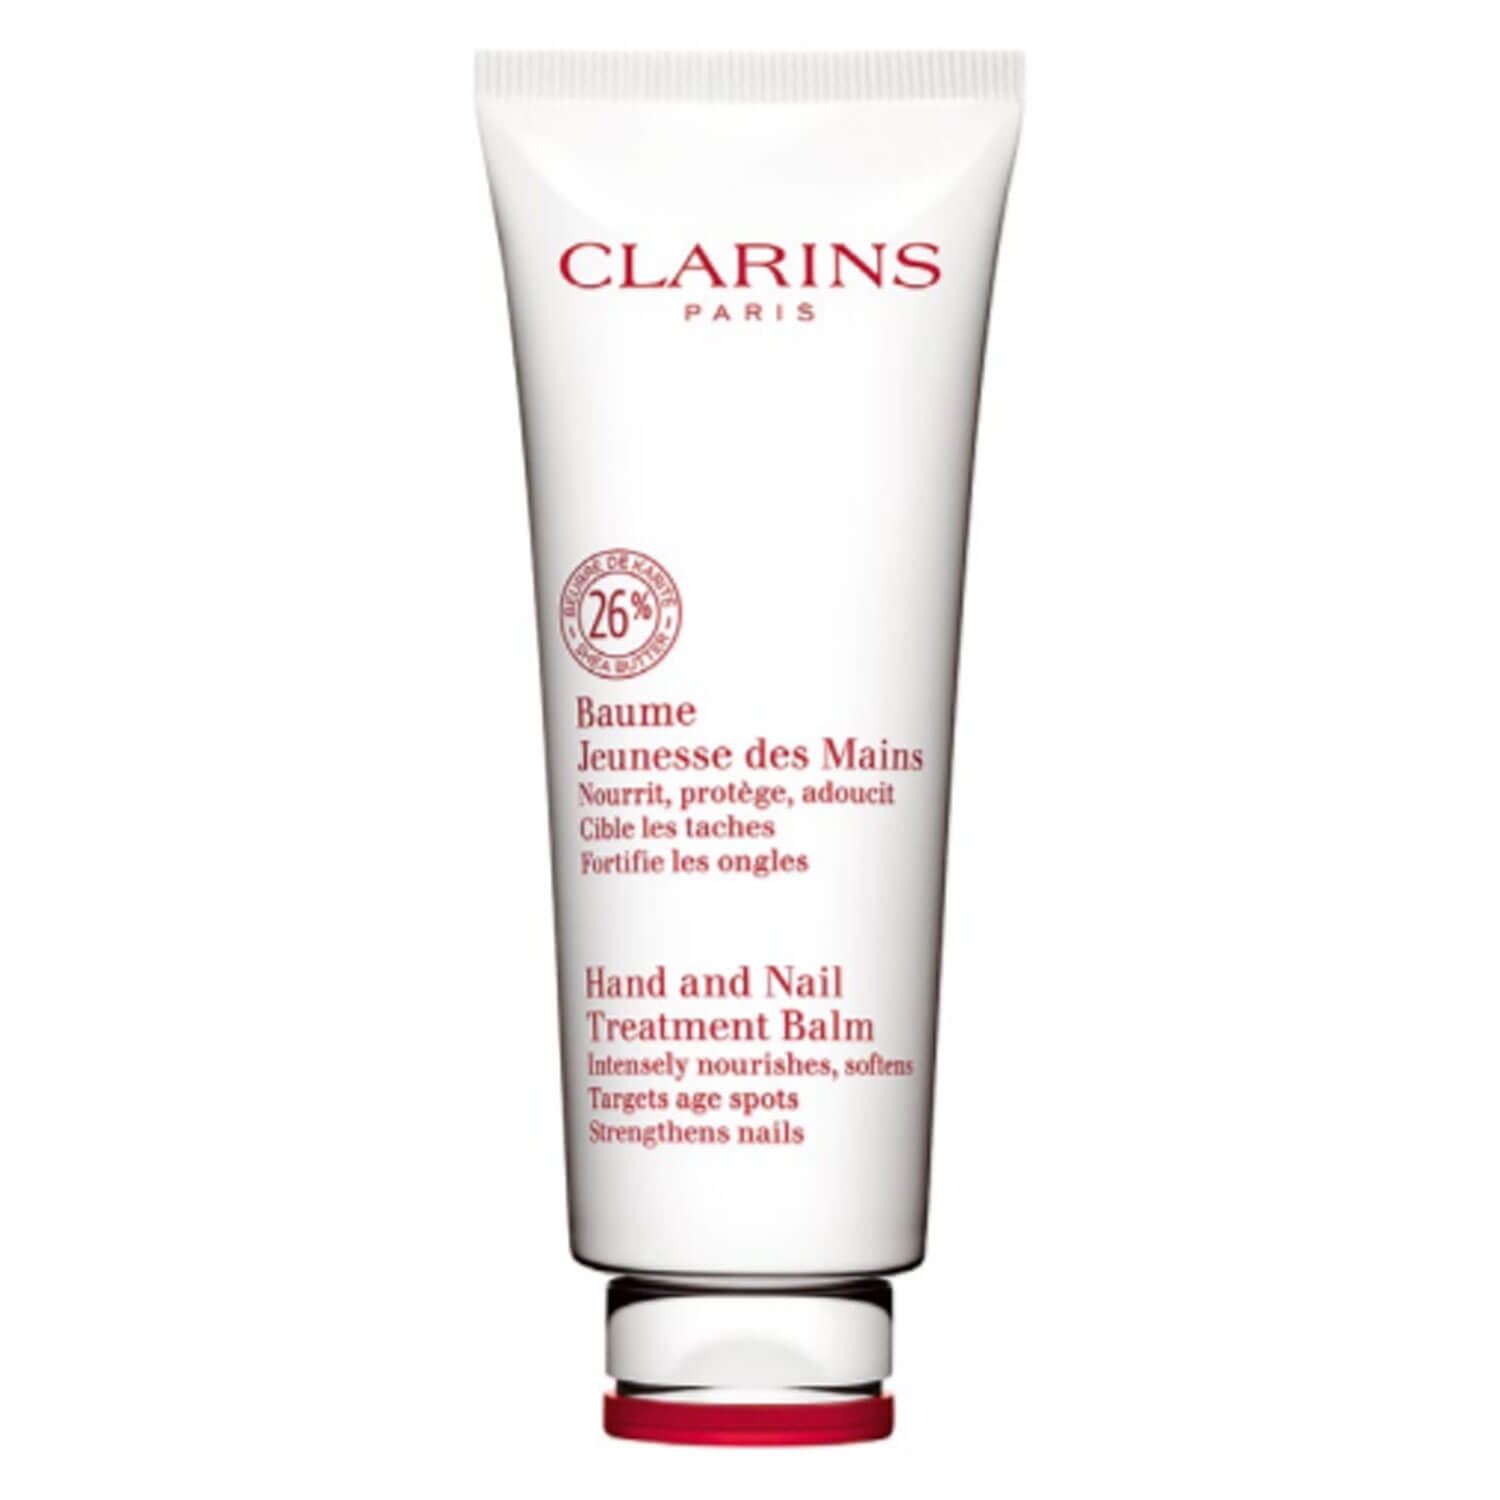 Produktbild von Clarins Body - Hand and Nail Treatment Balm